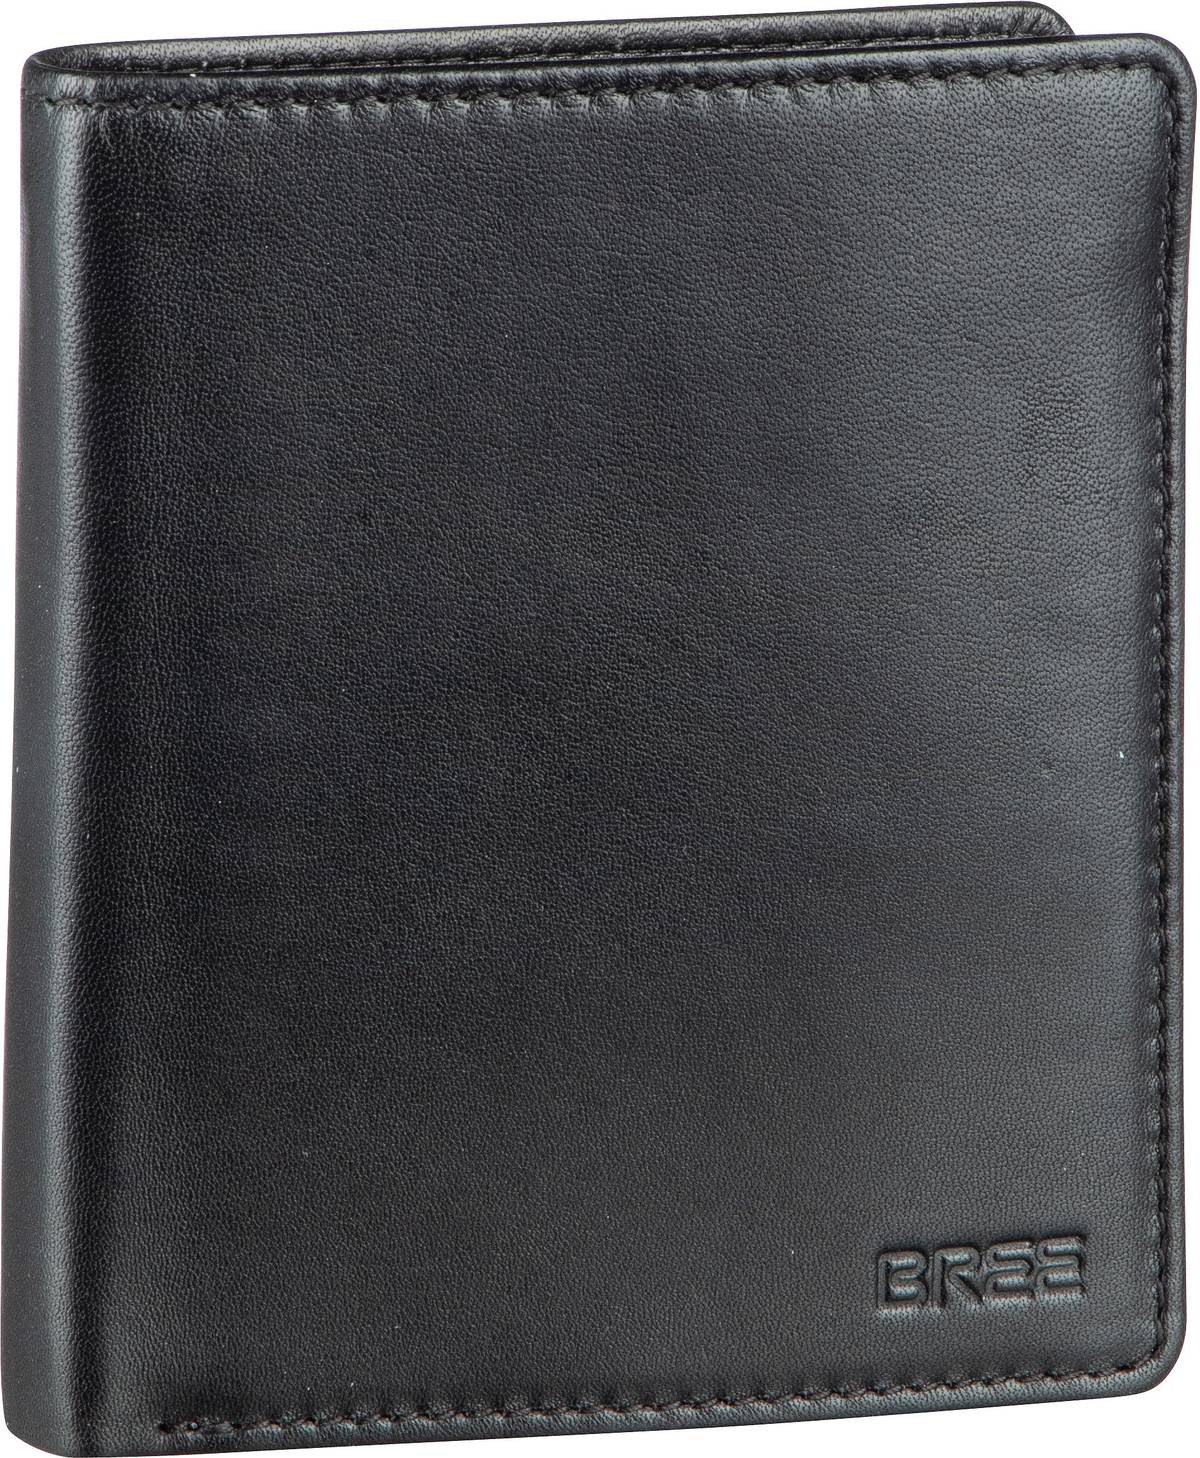 Bree Pocket New 115 - Black